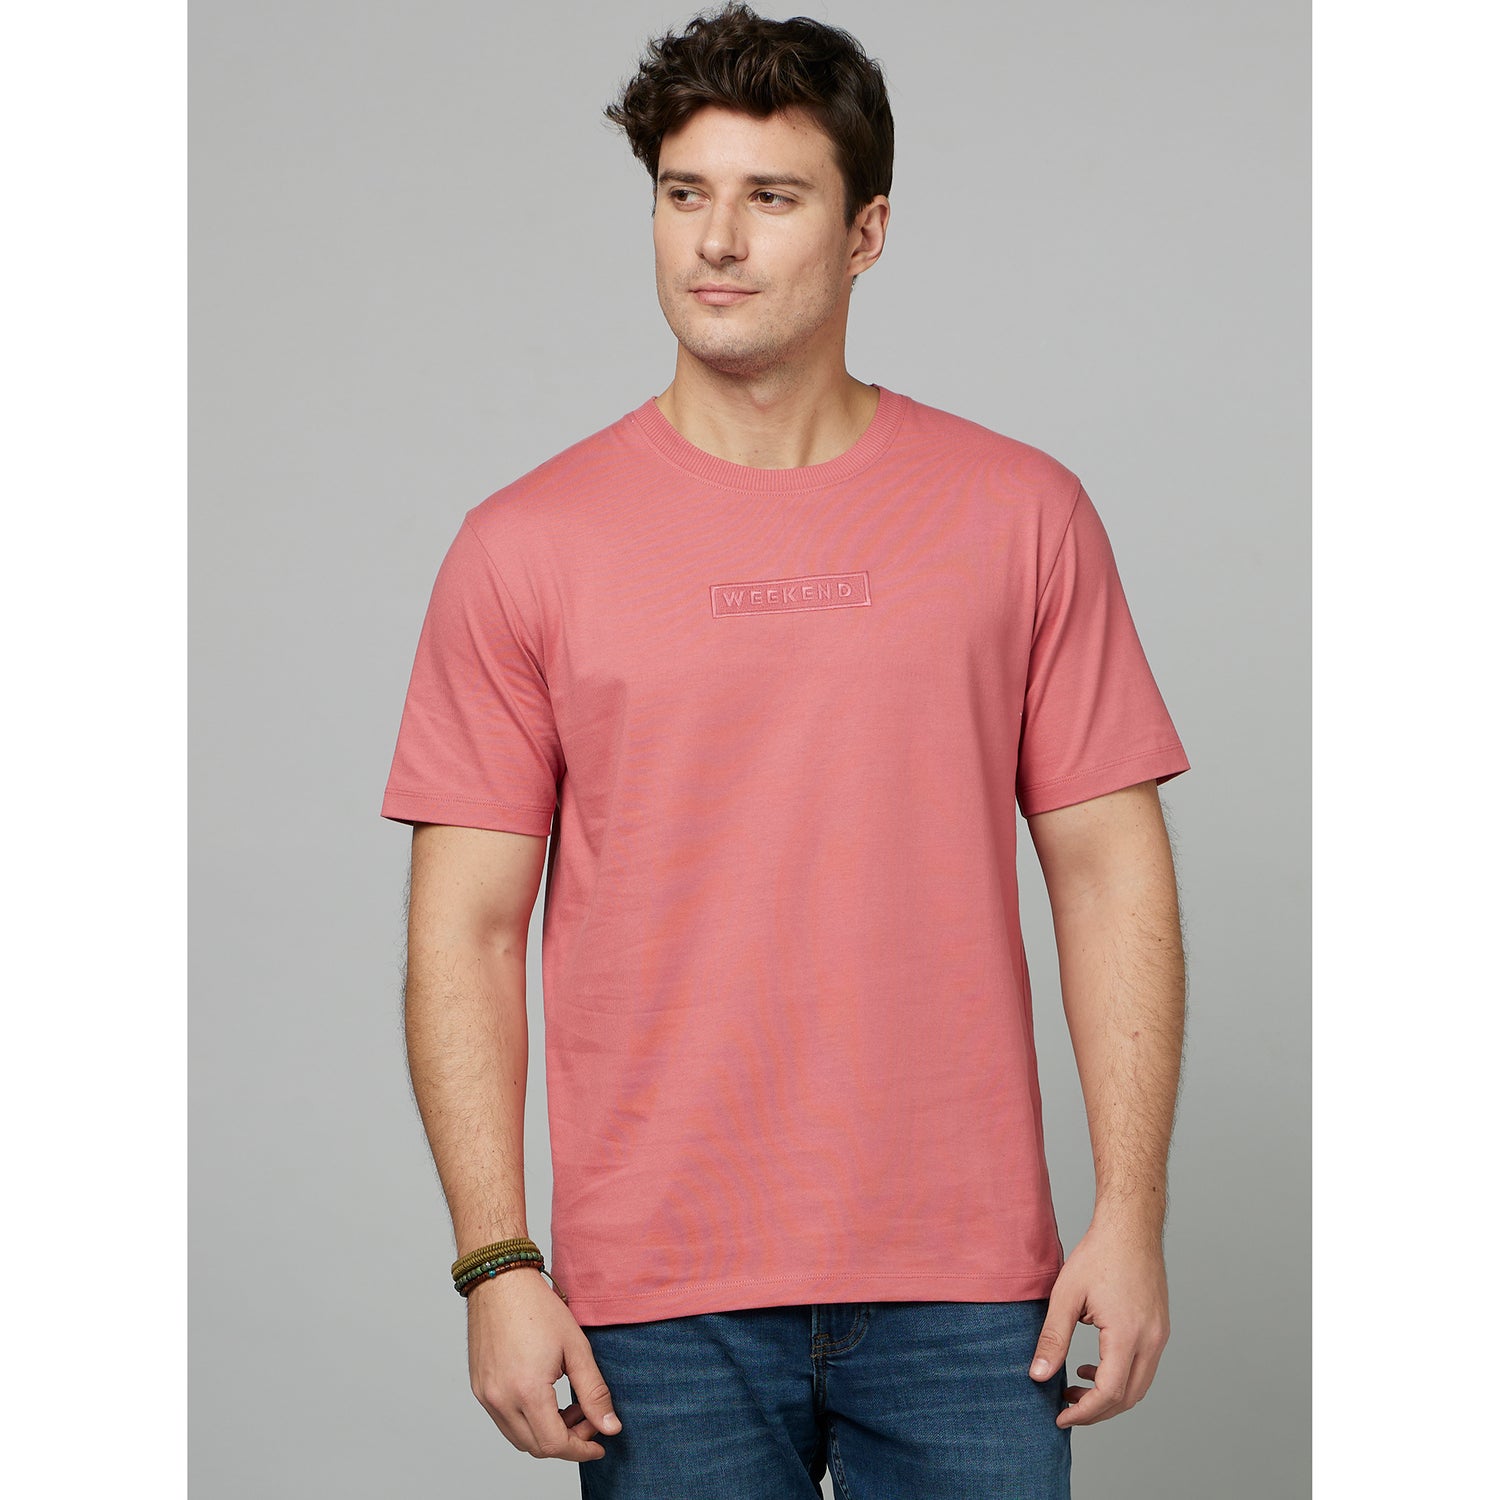 Mauve Round Neck Cotton Casual T-Shirt (FEDETON)